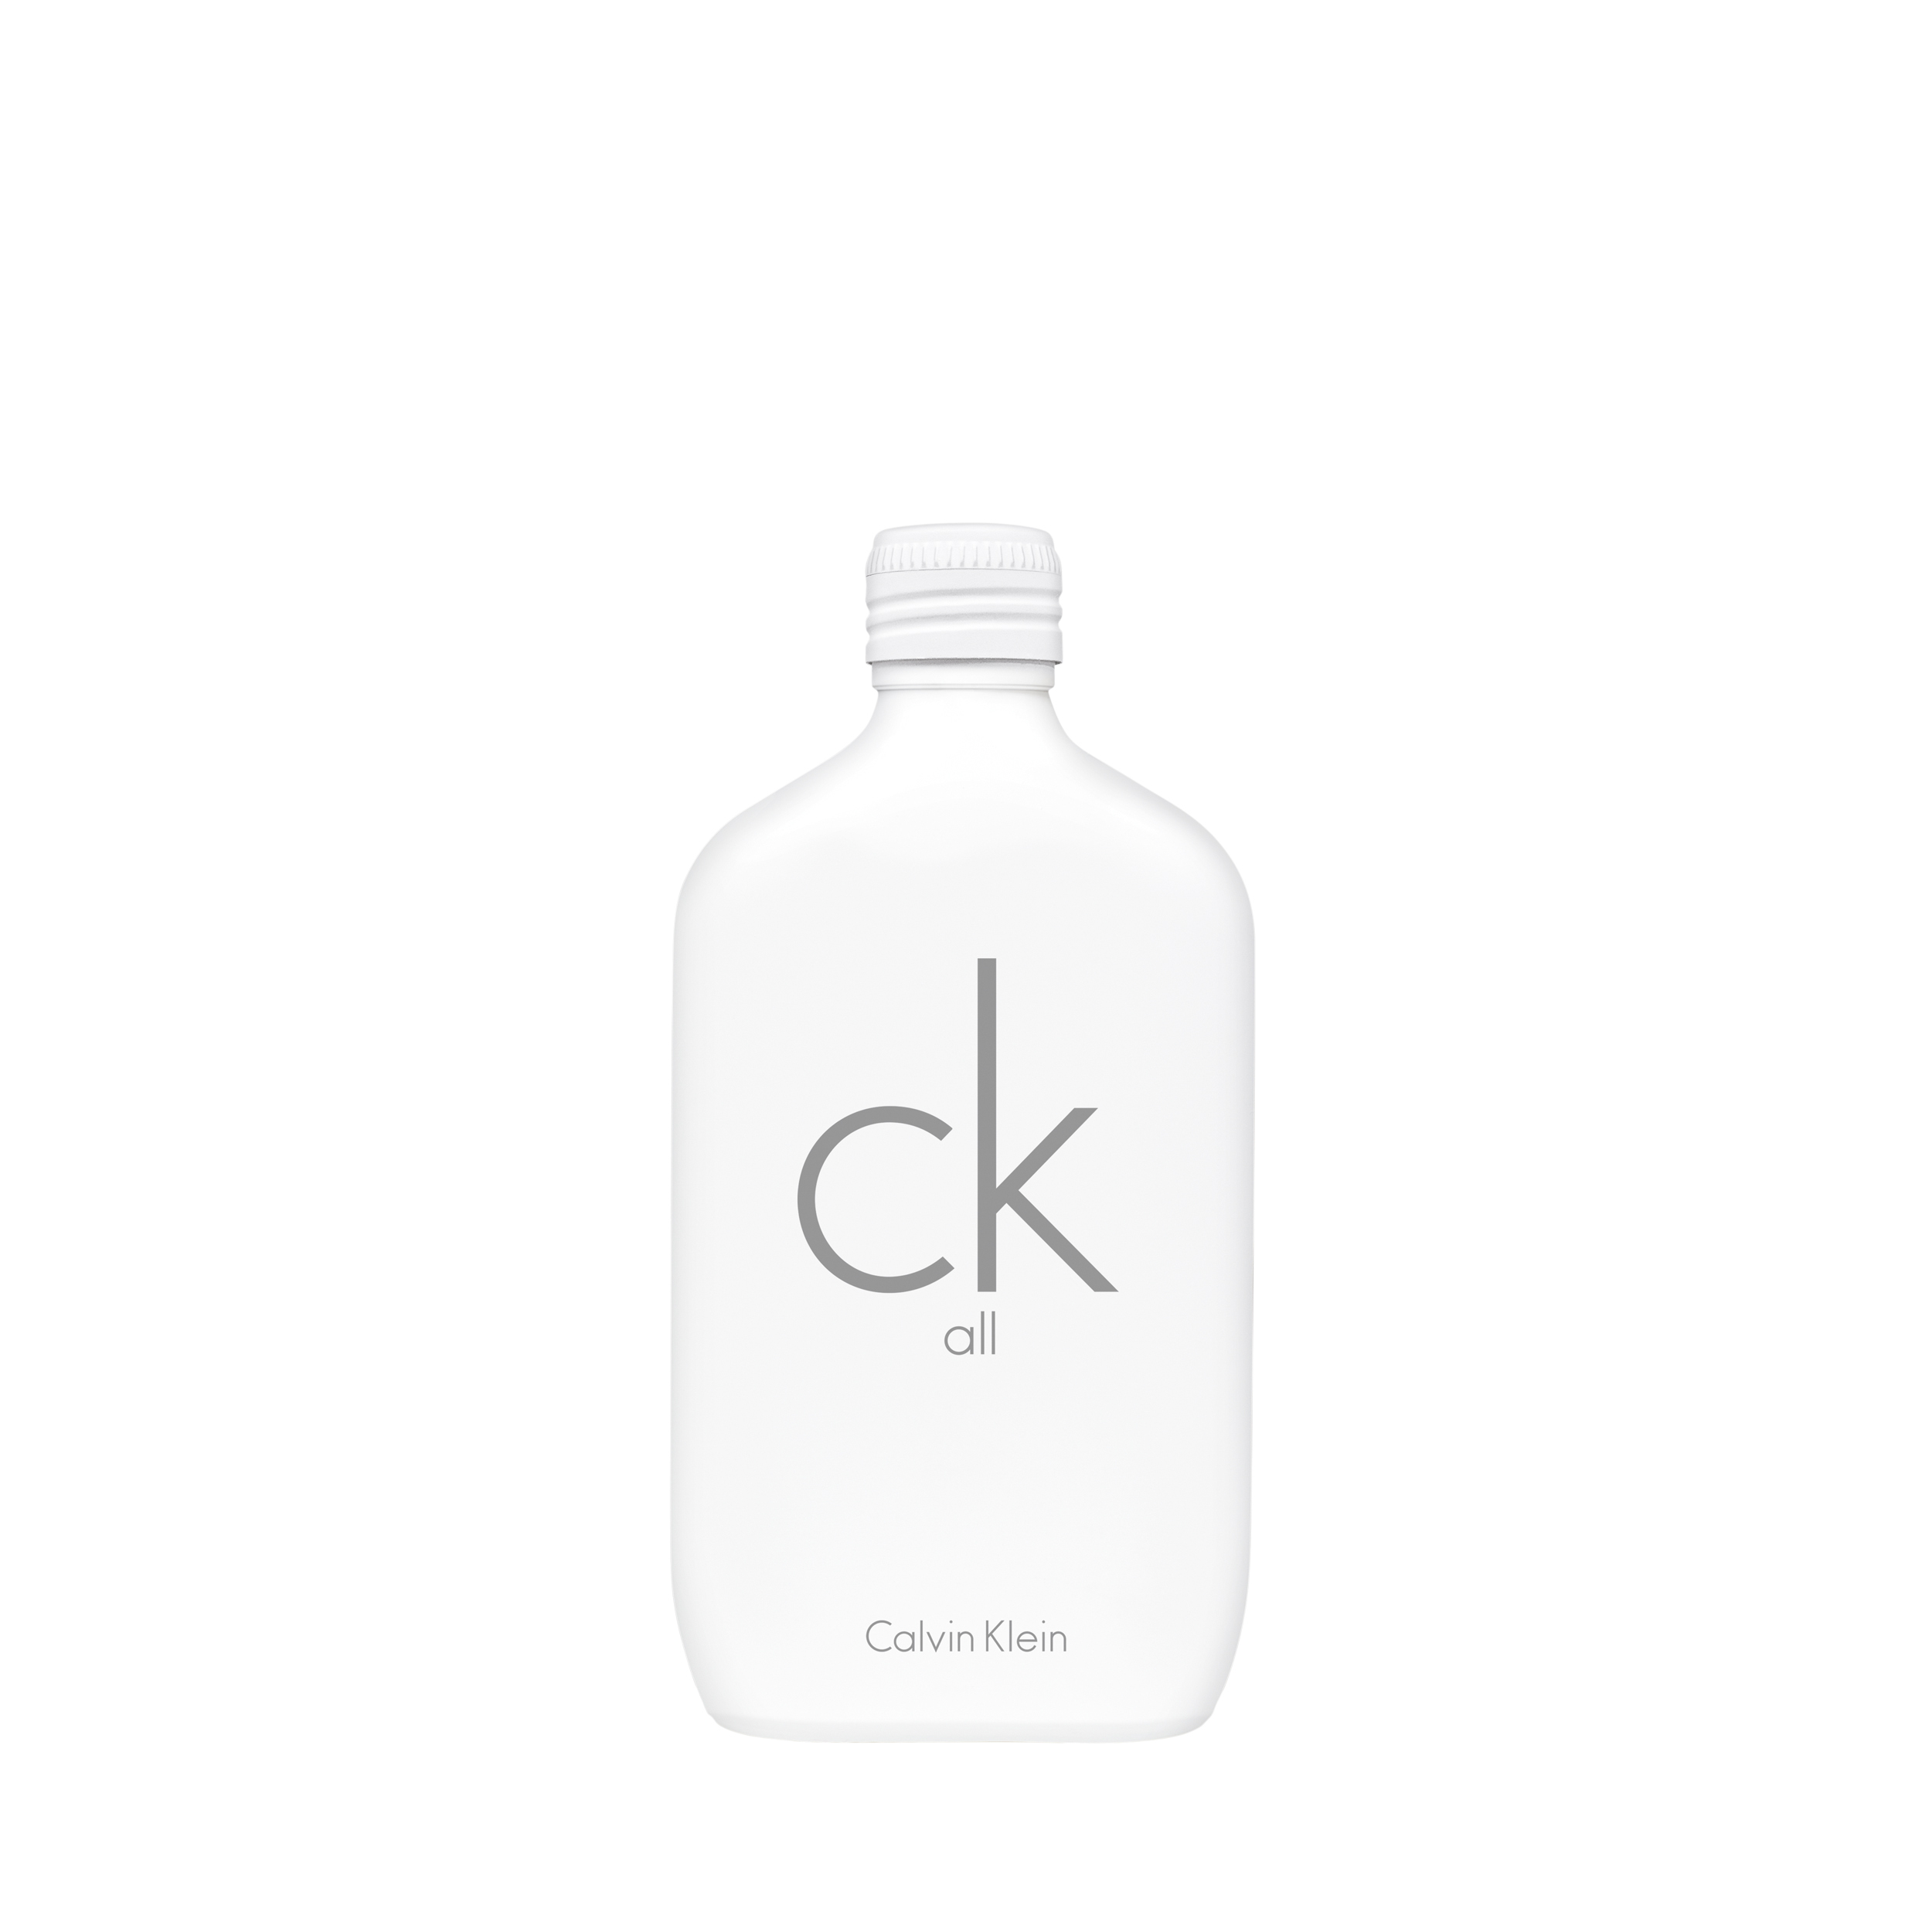 Calvin Klein Ck All 50 ml / unisex